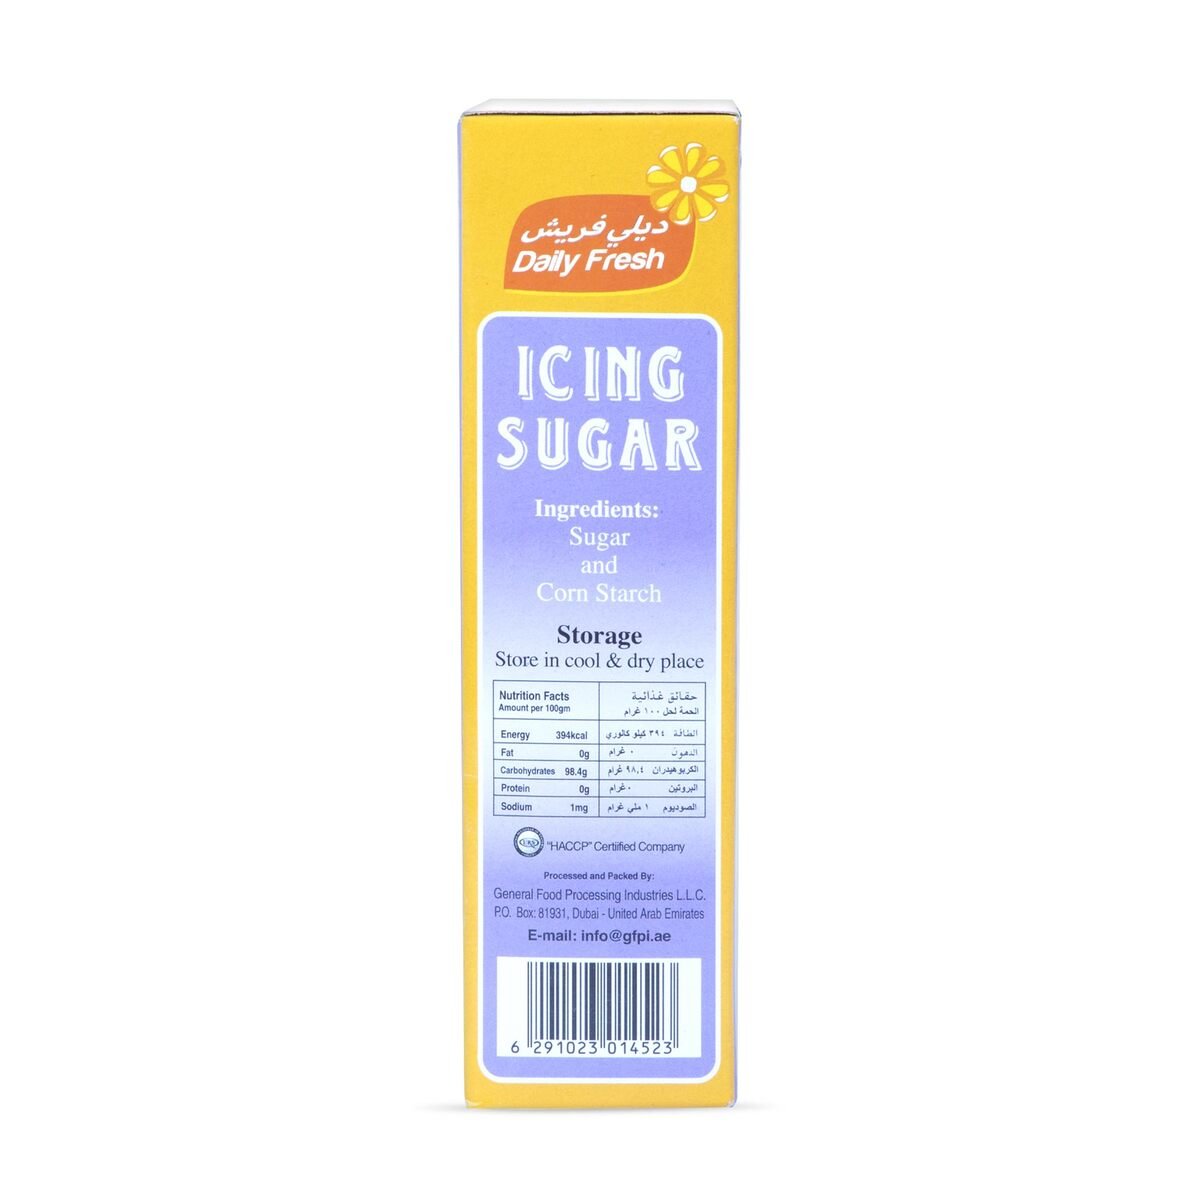 Daily Fresh Icing Sugar 500g